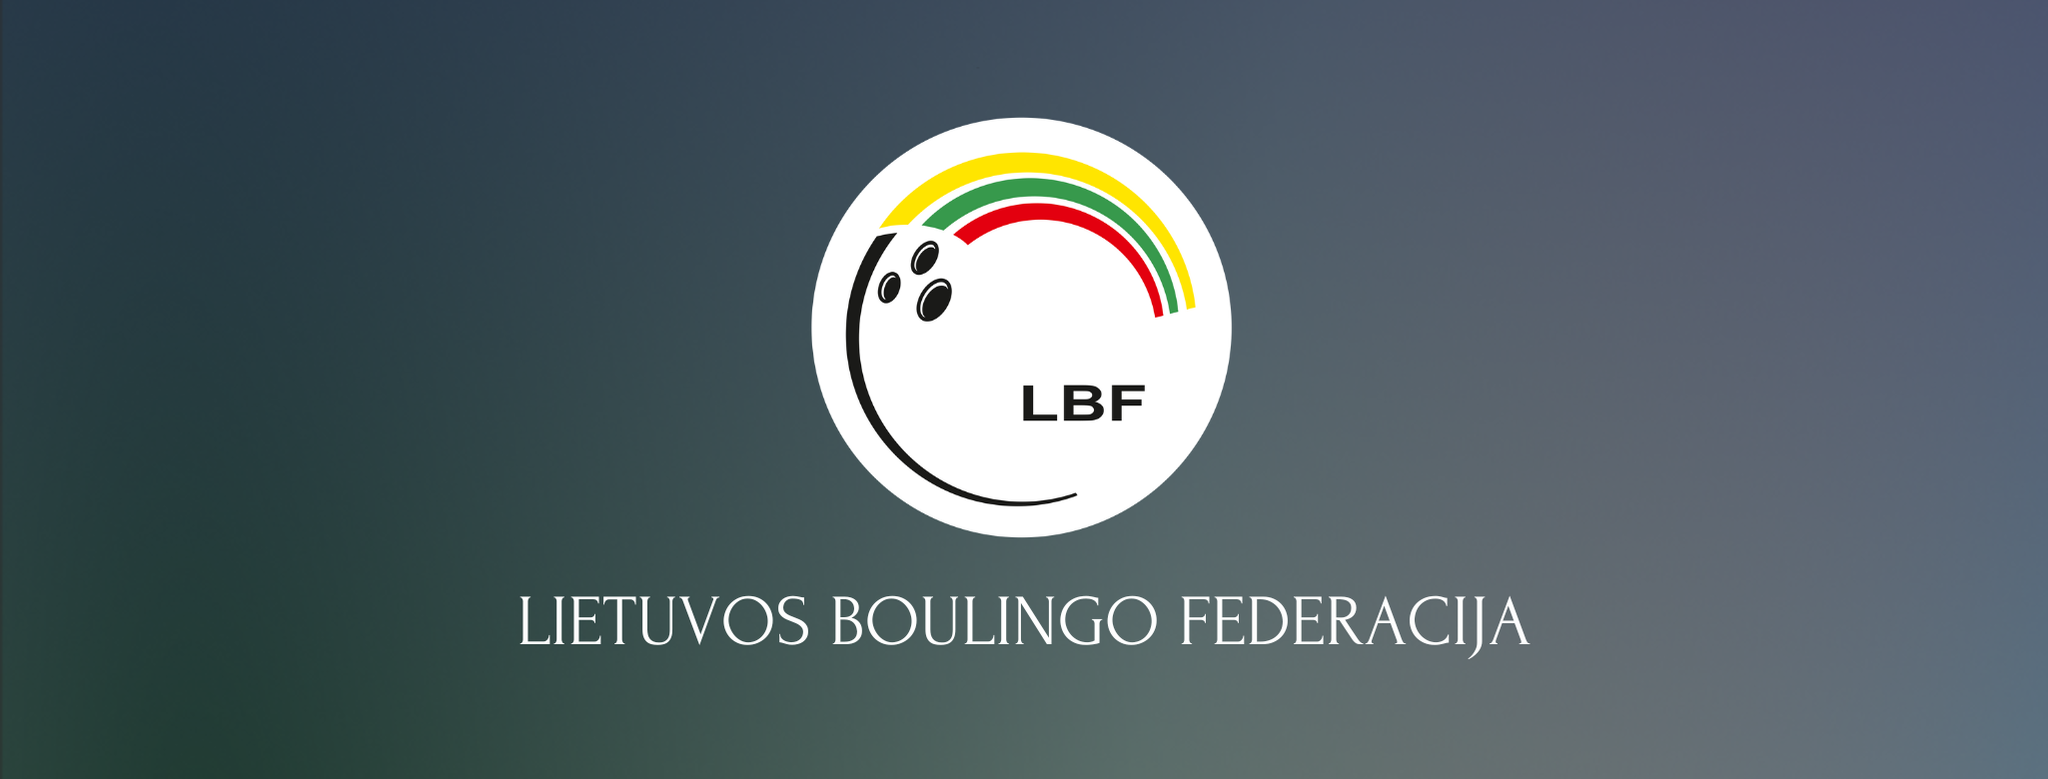 Lietuvos-Boulingo-Federacija-1.png